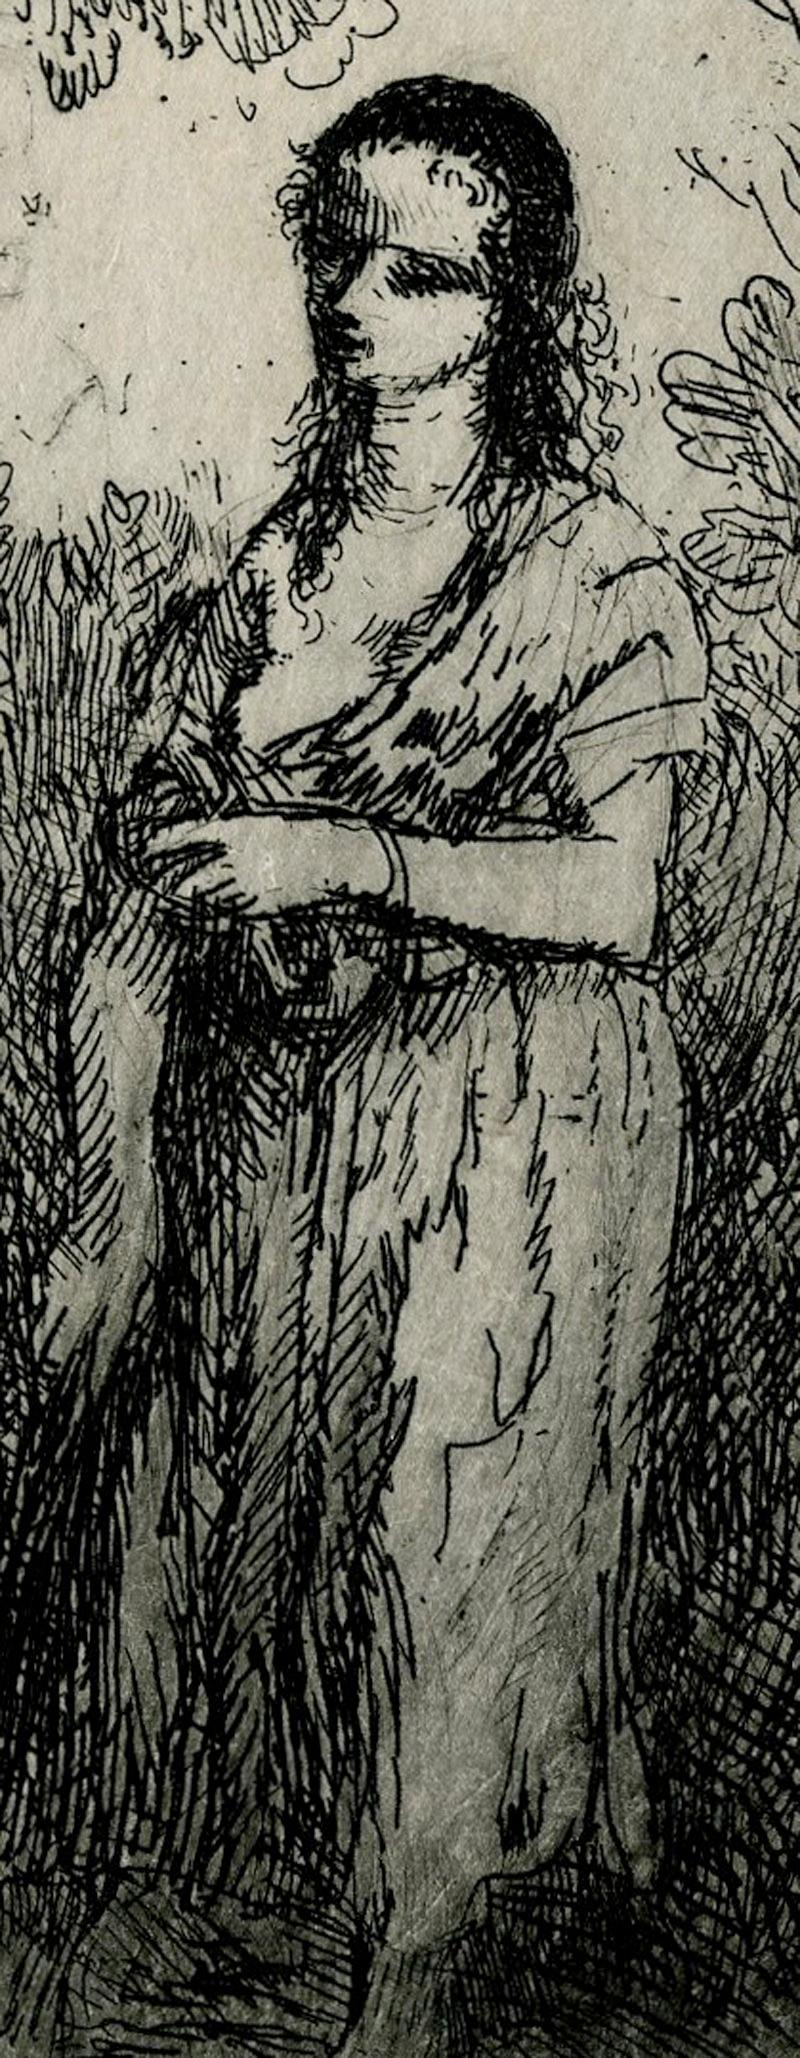 Pyramus et Thisbe
Gravure à l'eau-forte, c.1906
Signé le long du bord inférieur au crayon 